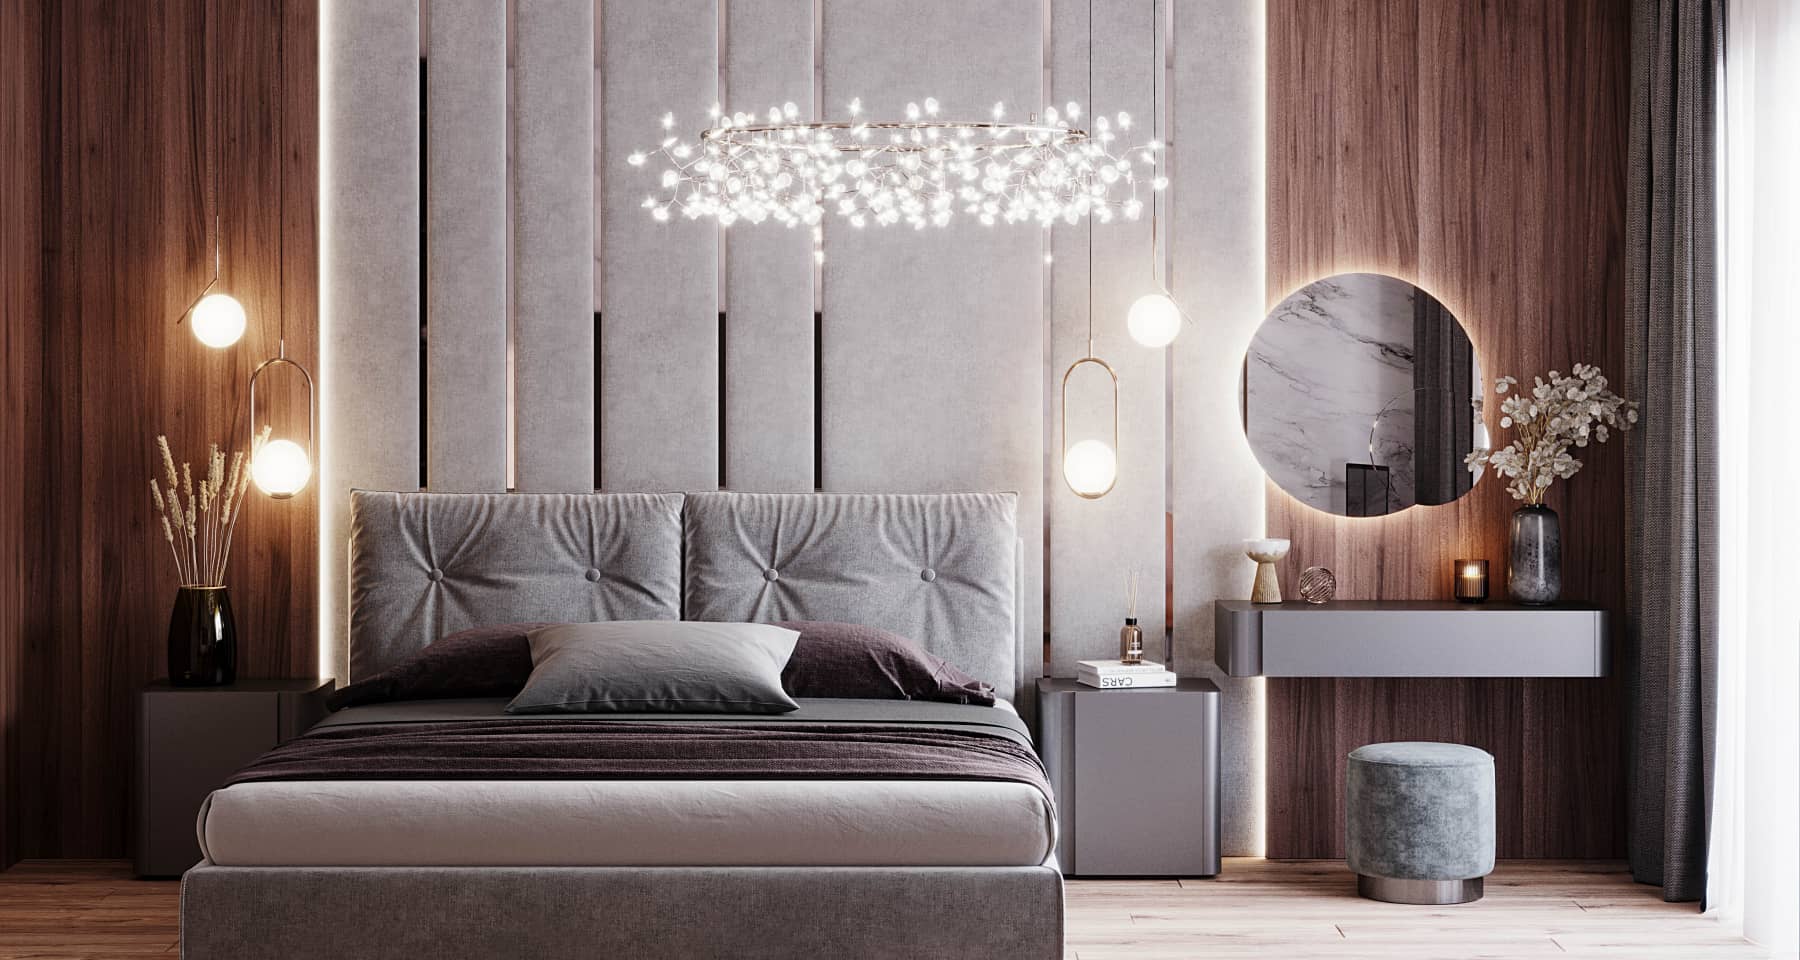 Оформление спальни в скандинавском стиле: выбор цвета и мебели, трендовые дизайнерские идеи